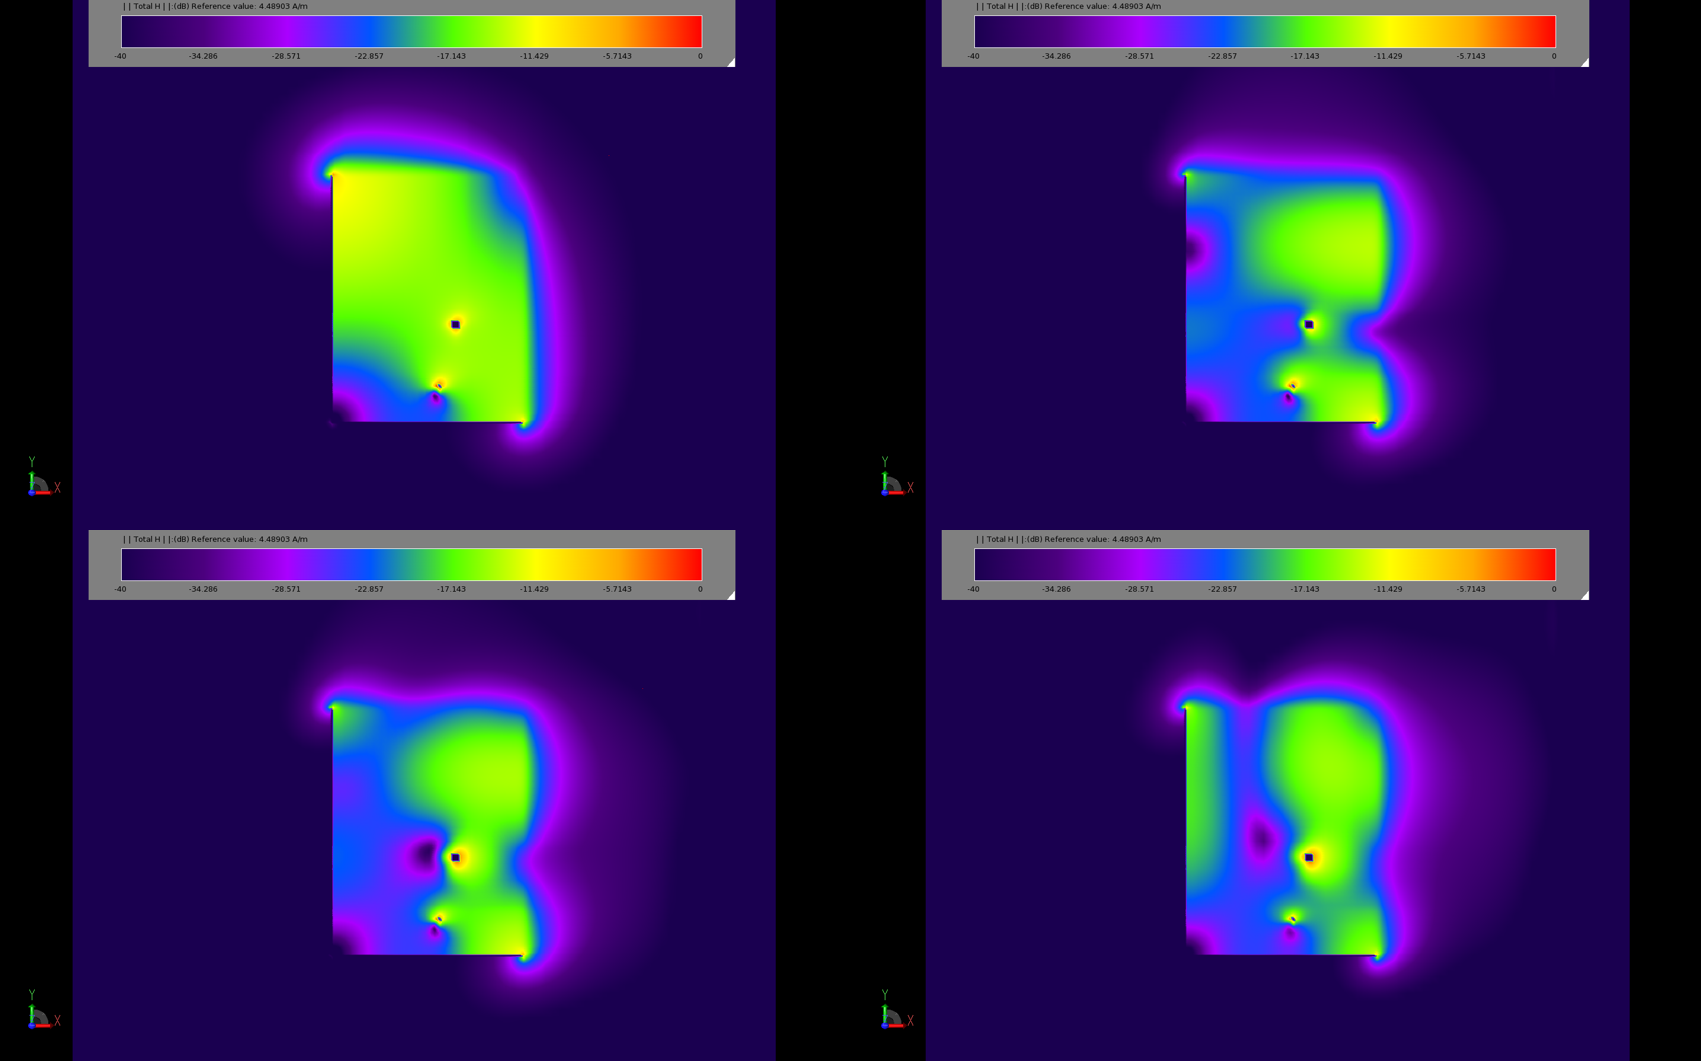 図3：定常状態の磁場分布のプロットは、パッチの異なる動作モードを示す。左上の画像（3a）は2.45GHz、右上の画像（3b）は5.2GHz。下の2つの画像（3cと3d）は、5.2GHzでの応答を示している。